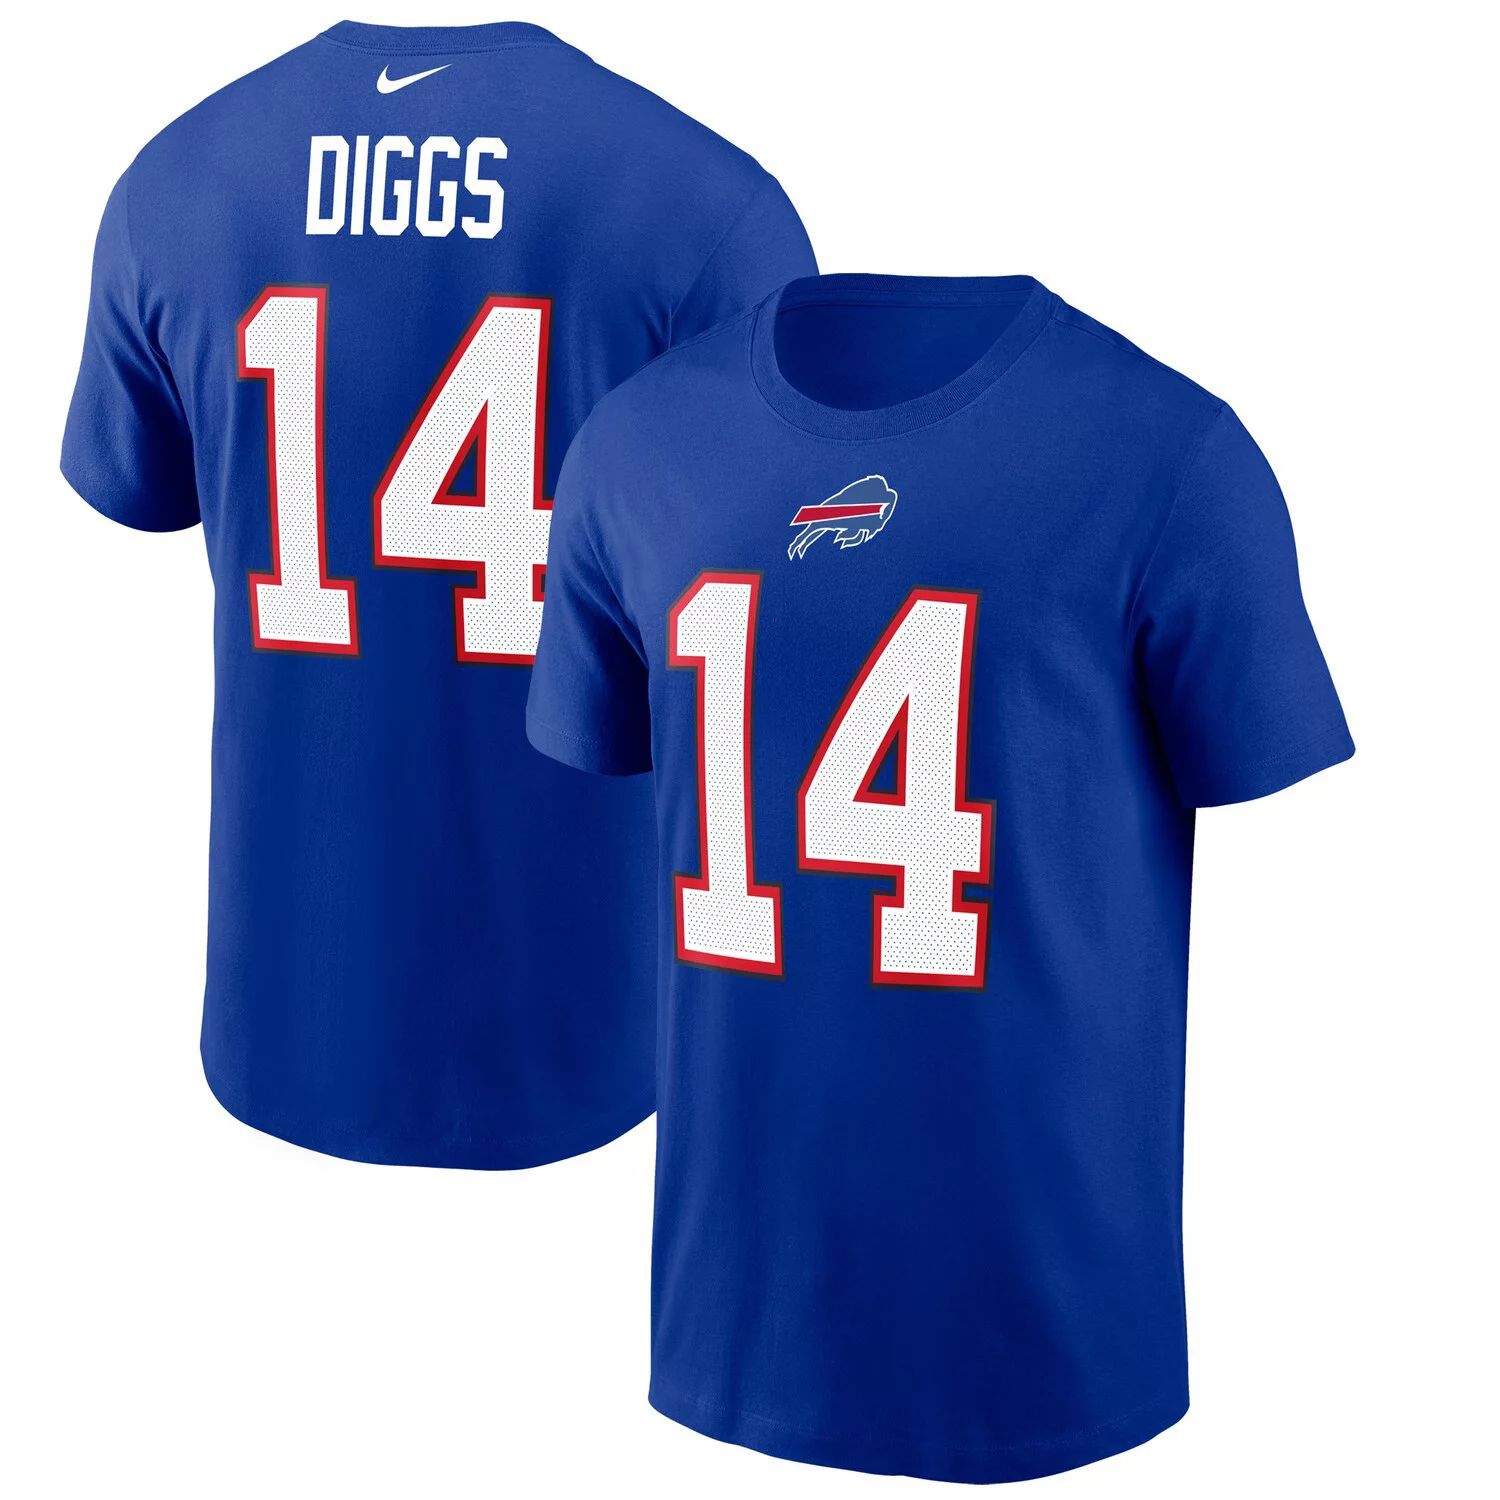 Мужская футболка Stefon Diggs Royal Buffalo Bills с именем и номером Nike